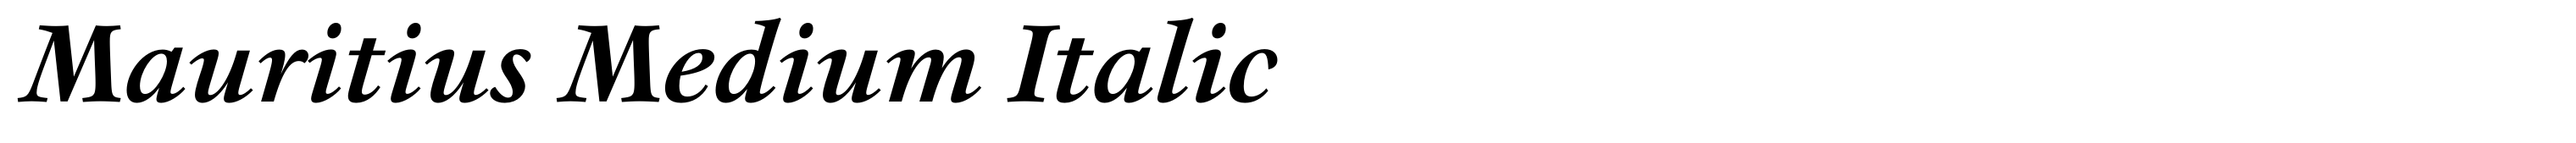 Mauritius Medium Italic